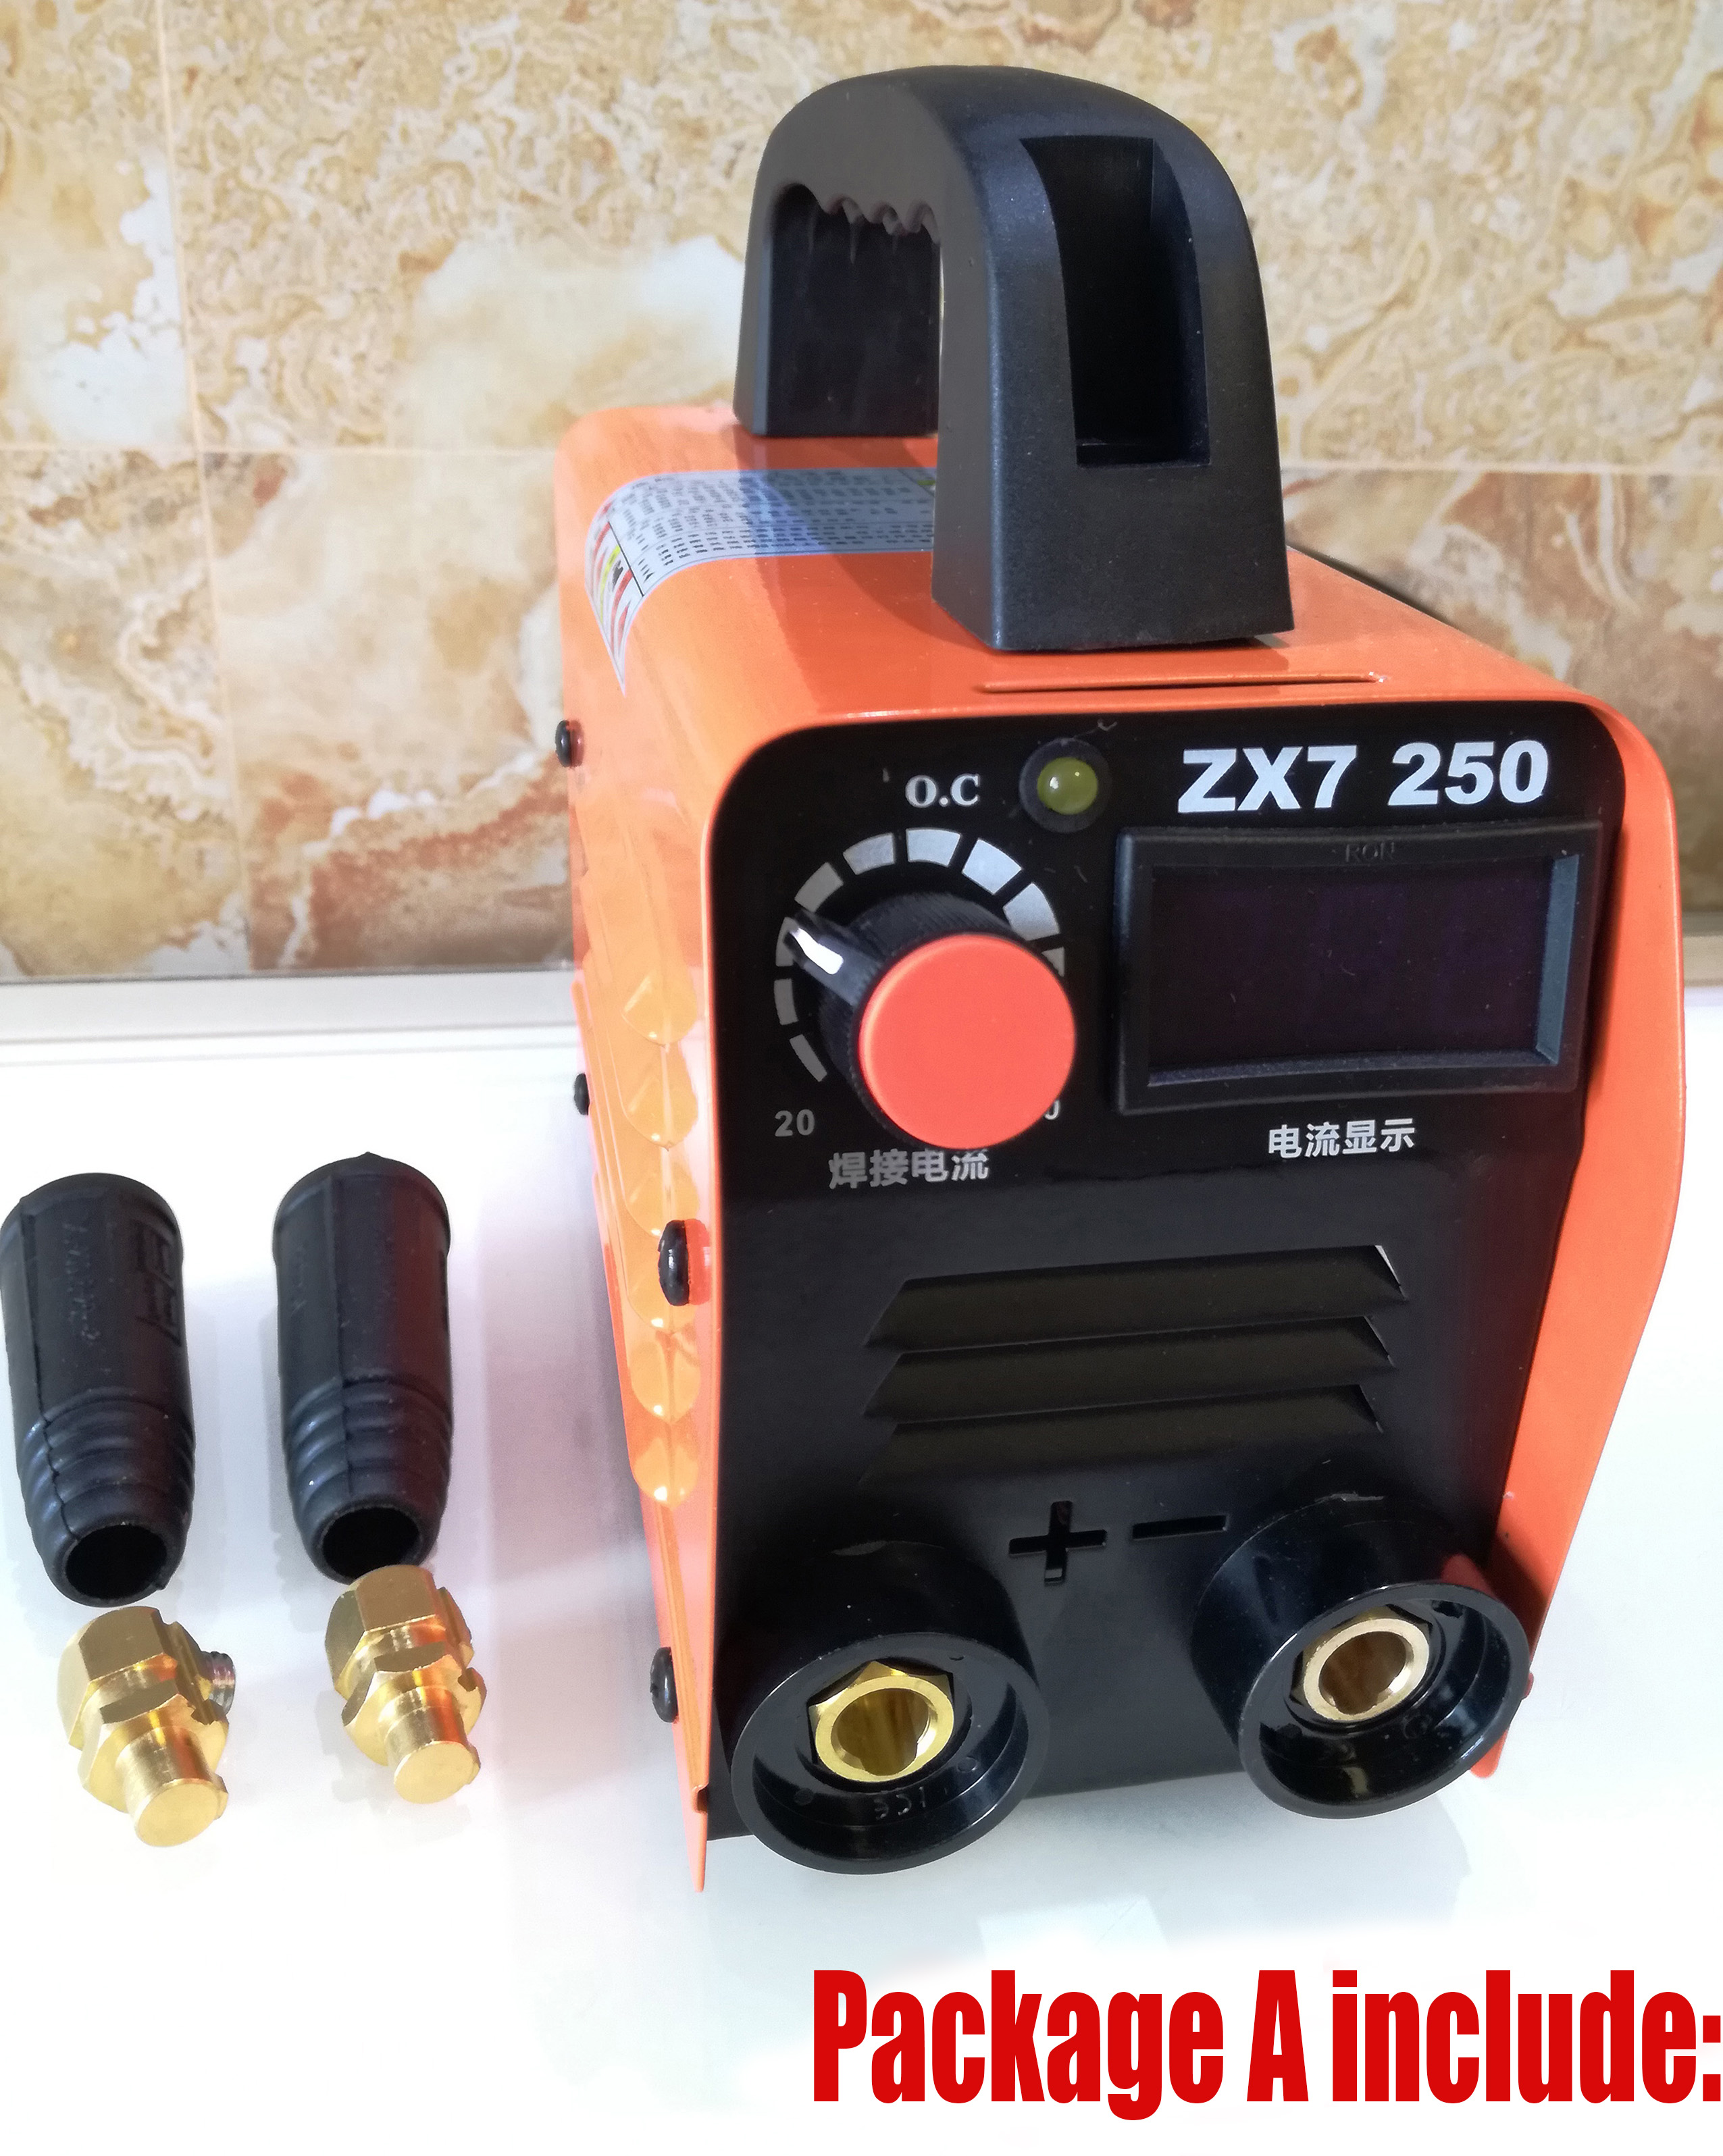 ZX7-250 220V 10-250A Handheld Mini MMA Electric Stick Welder Inverter ARC Welding Machine Metalworking Welding Tools